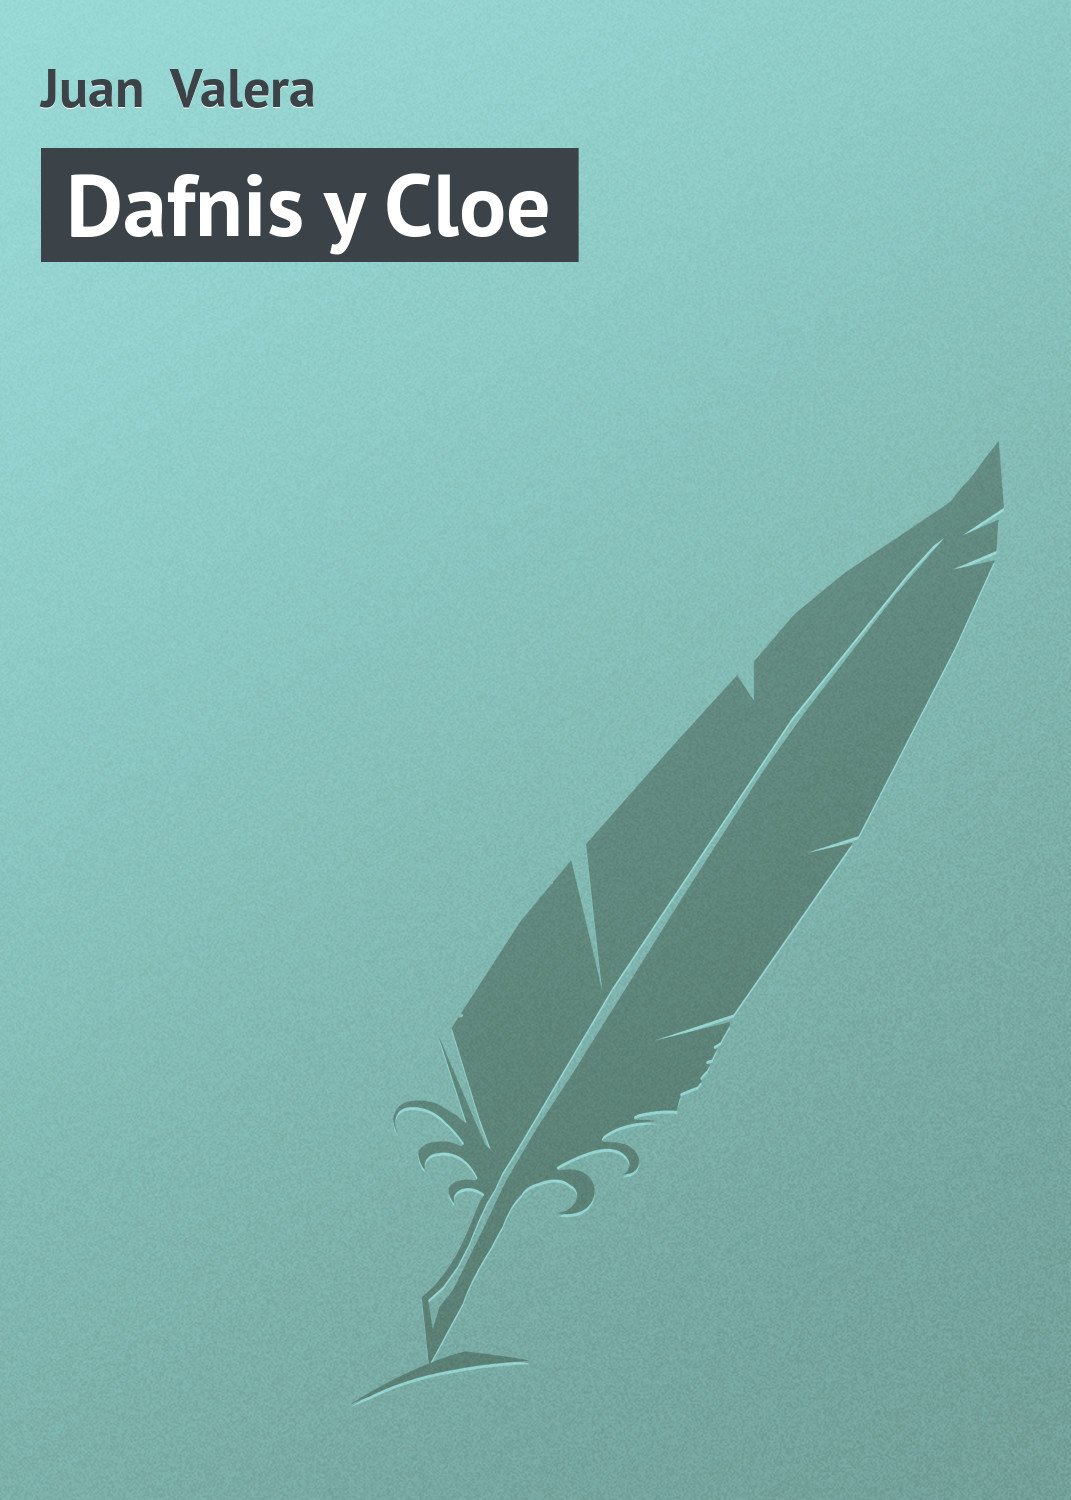 Книга Dafnis y Cloe из серии , созданная Juan Valera, может относится к жанру Зарубежная старинная литература, Зарубежная классика. Стоимость электронной книги Dafnis y Cloe с идентификатором 21107886 составляет 5.99 руб.